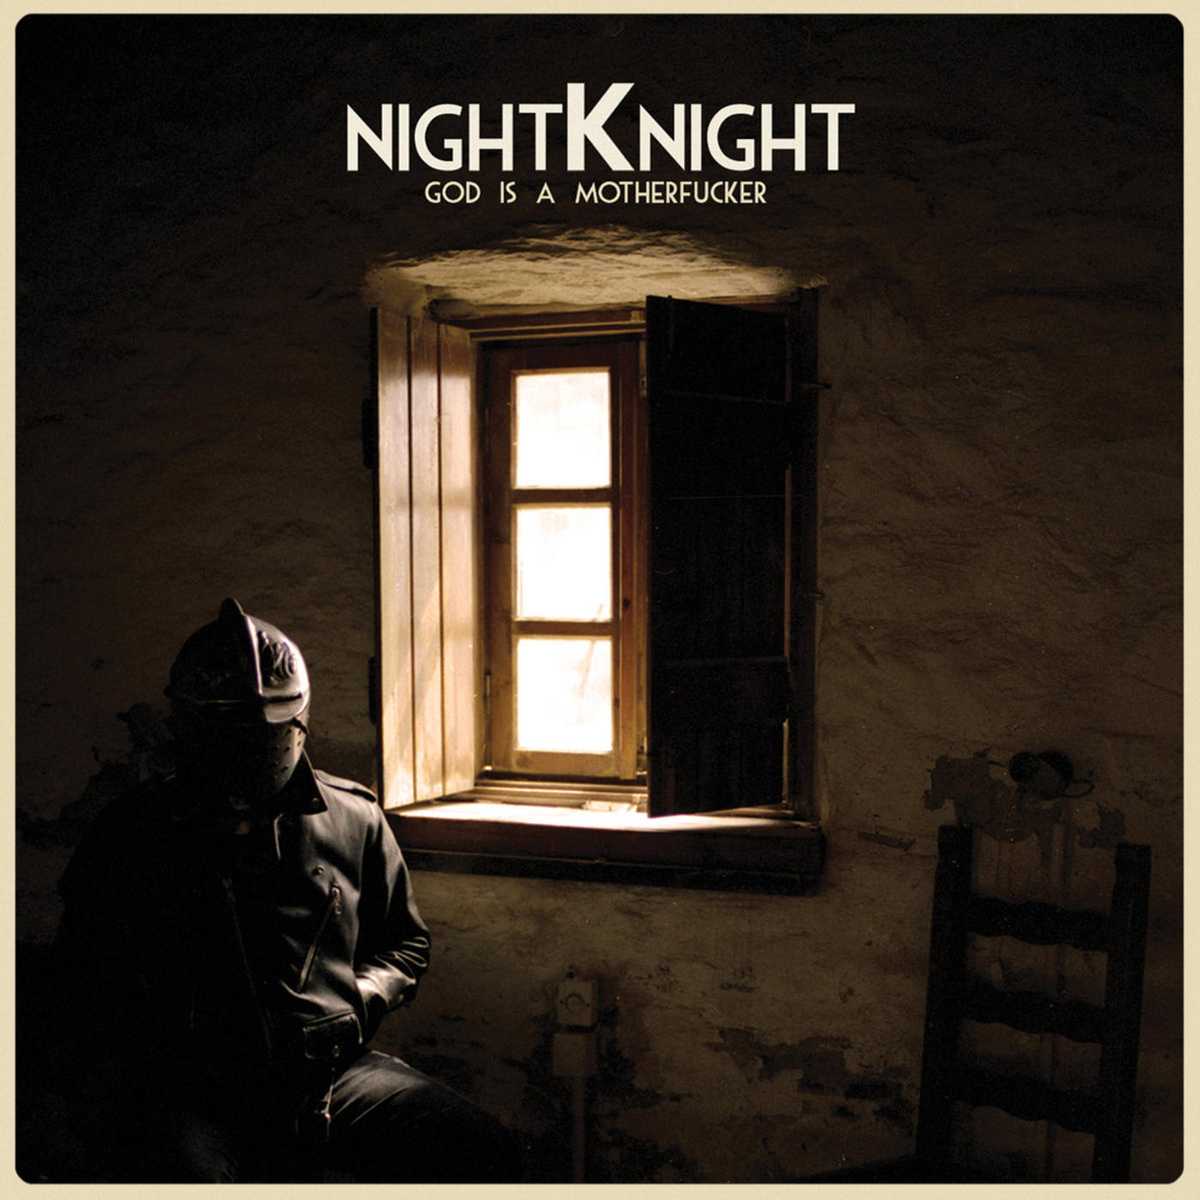 Night Knight - God is a motherfucker